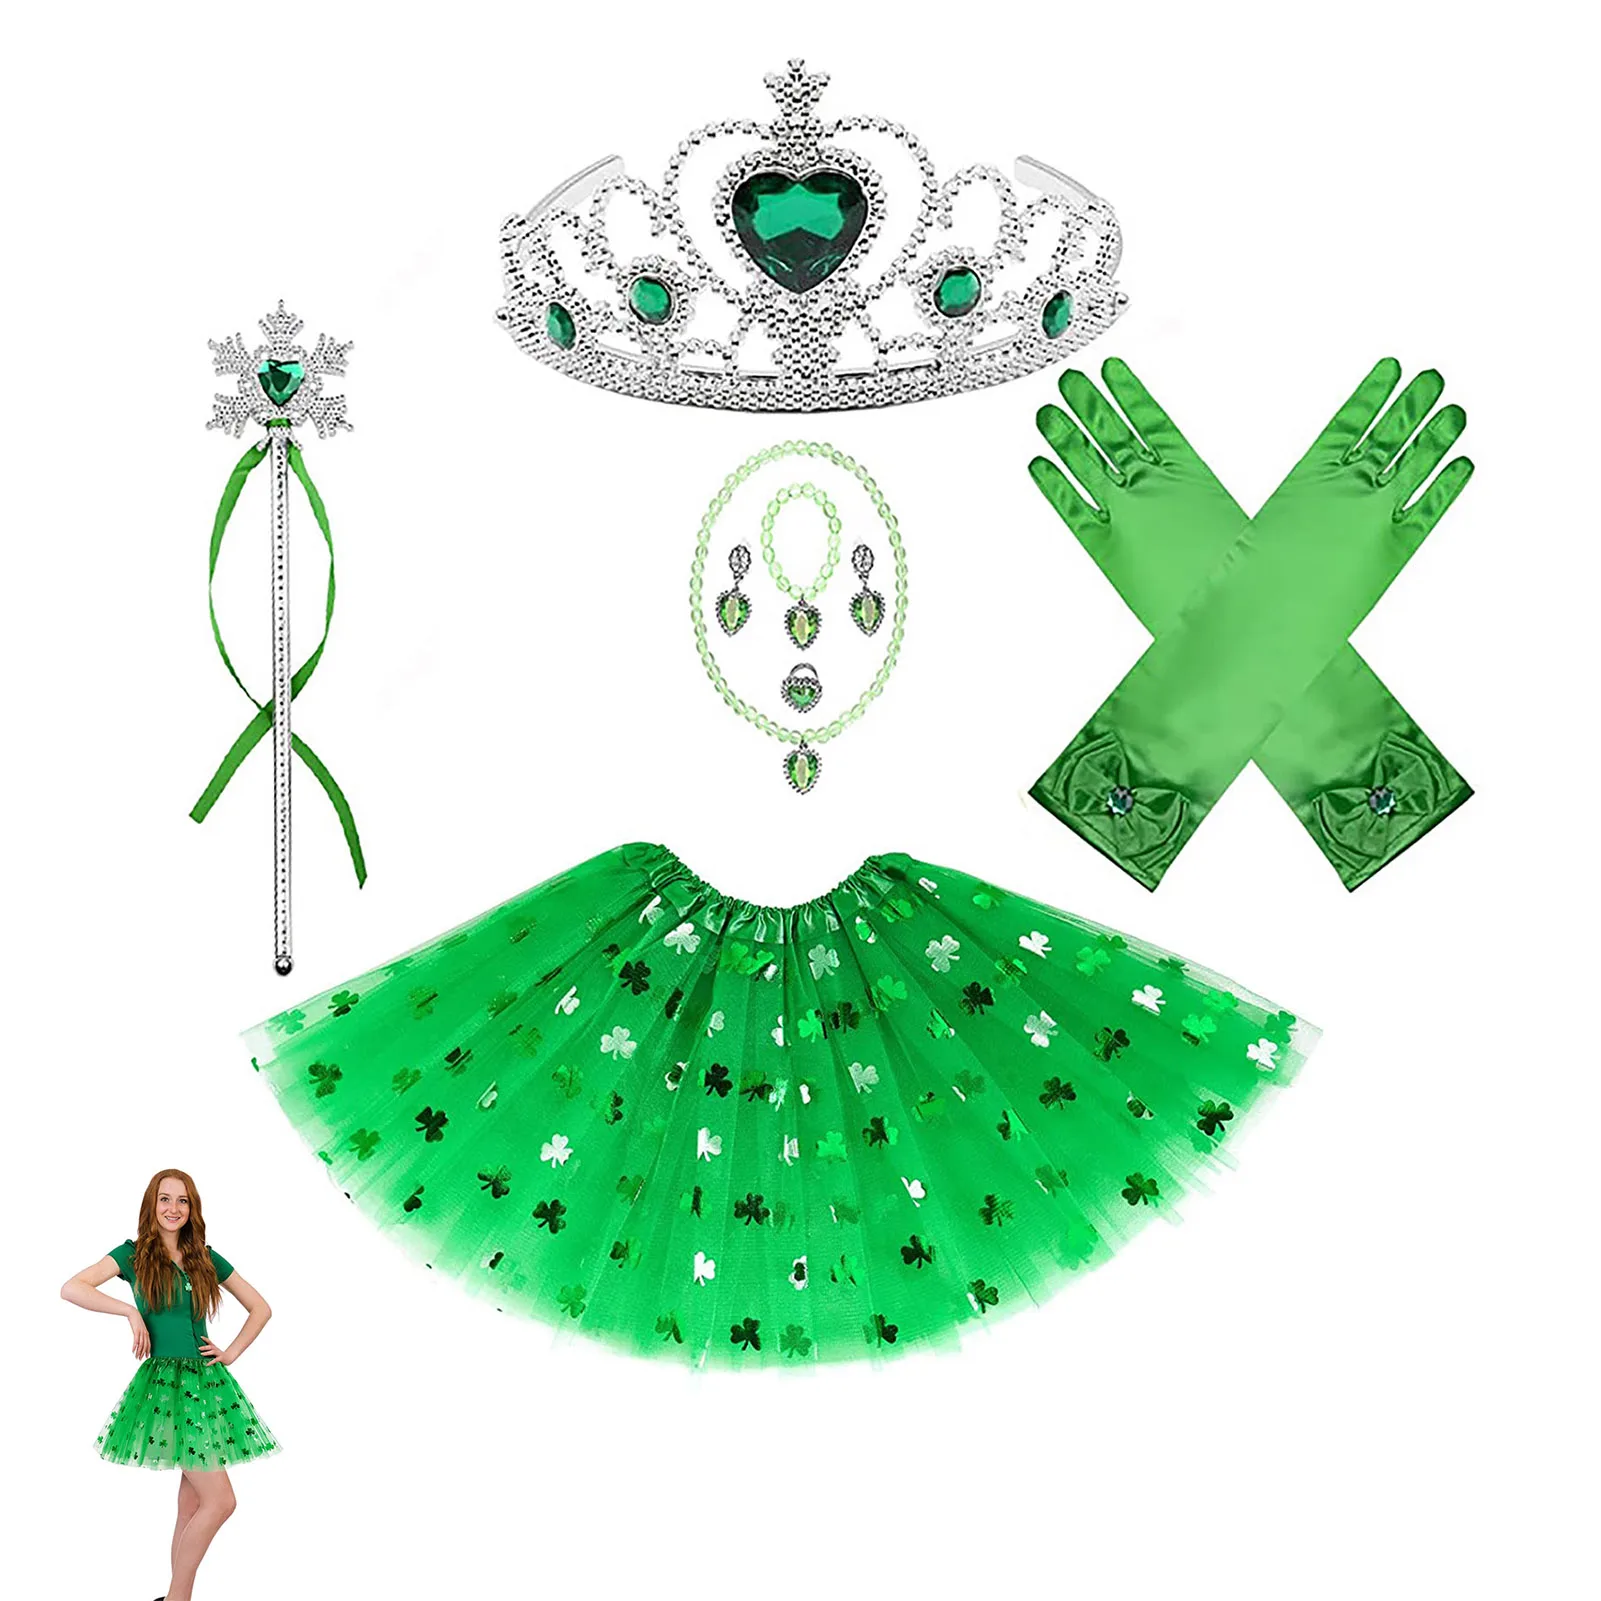 

Костюм принцессы с зеленым клевером, комплект из 10 предметов, включает юбку принцессы, корону, перчатки, волшебную палочку, ожерелье, кольцо